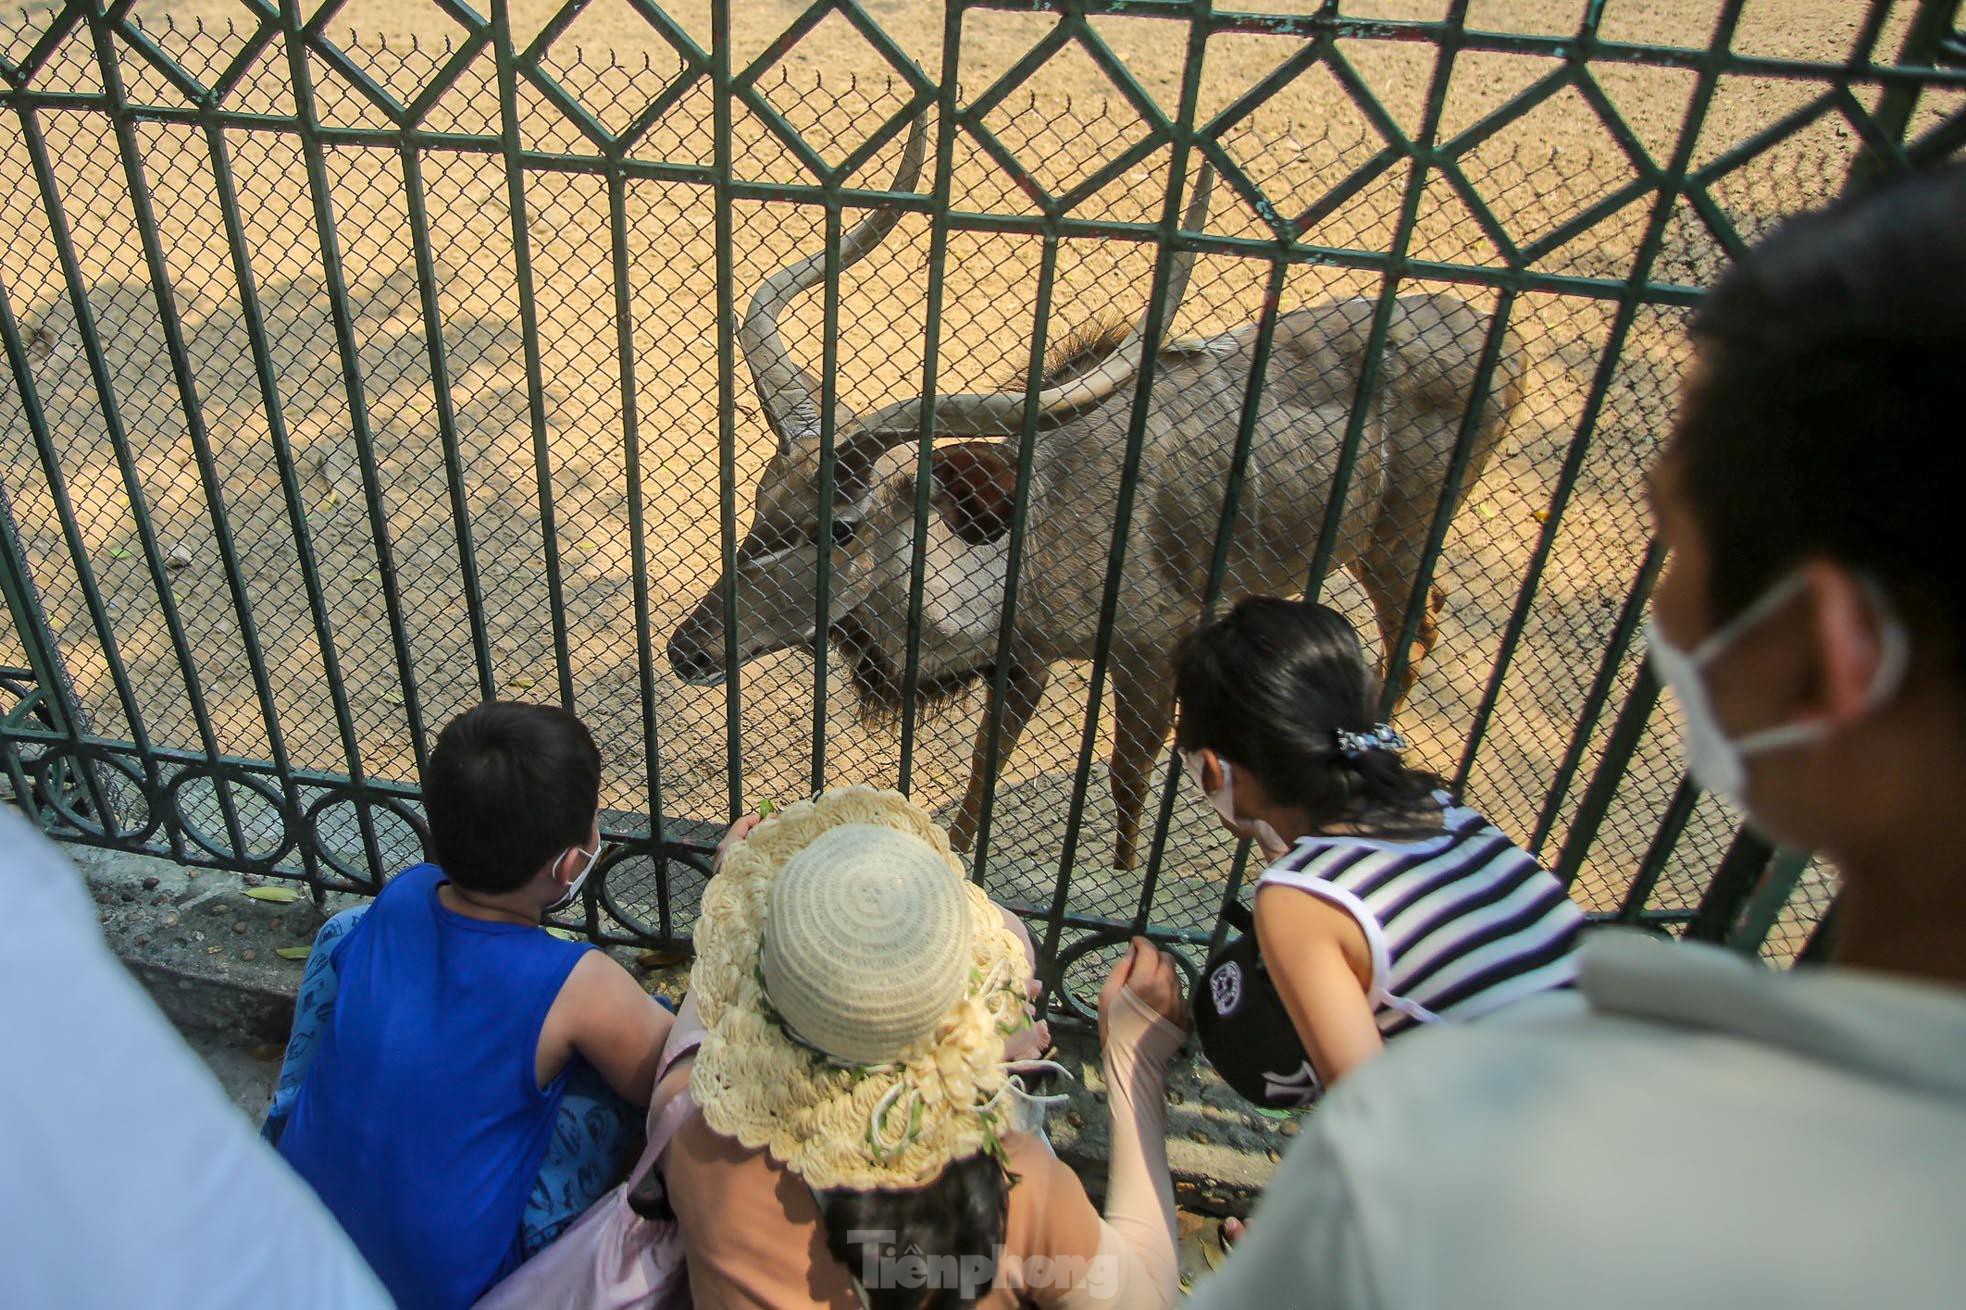 Ngàn người đổ về vườn thú Hà Nội trong ngày đầu nghỉ lễ - Ảnh 10.